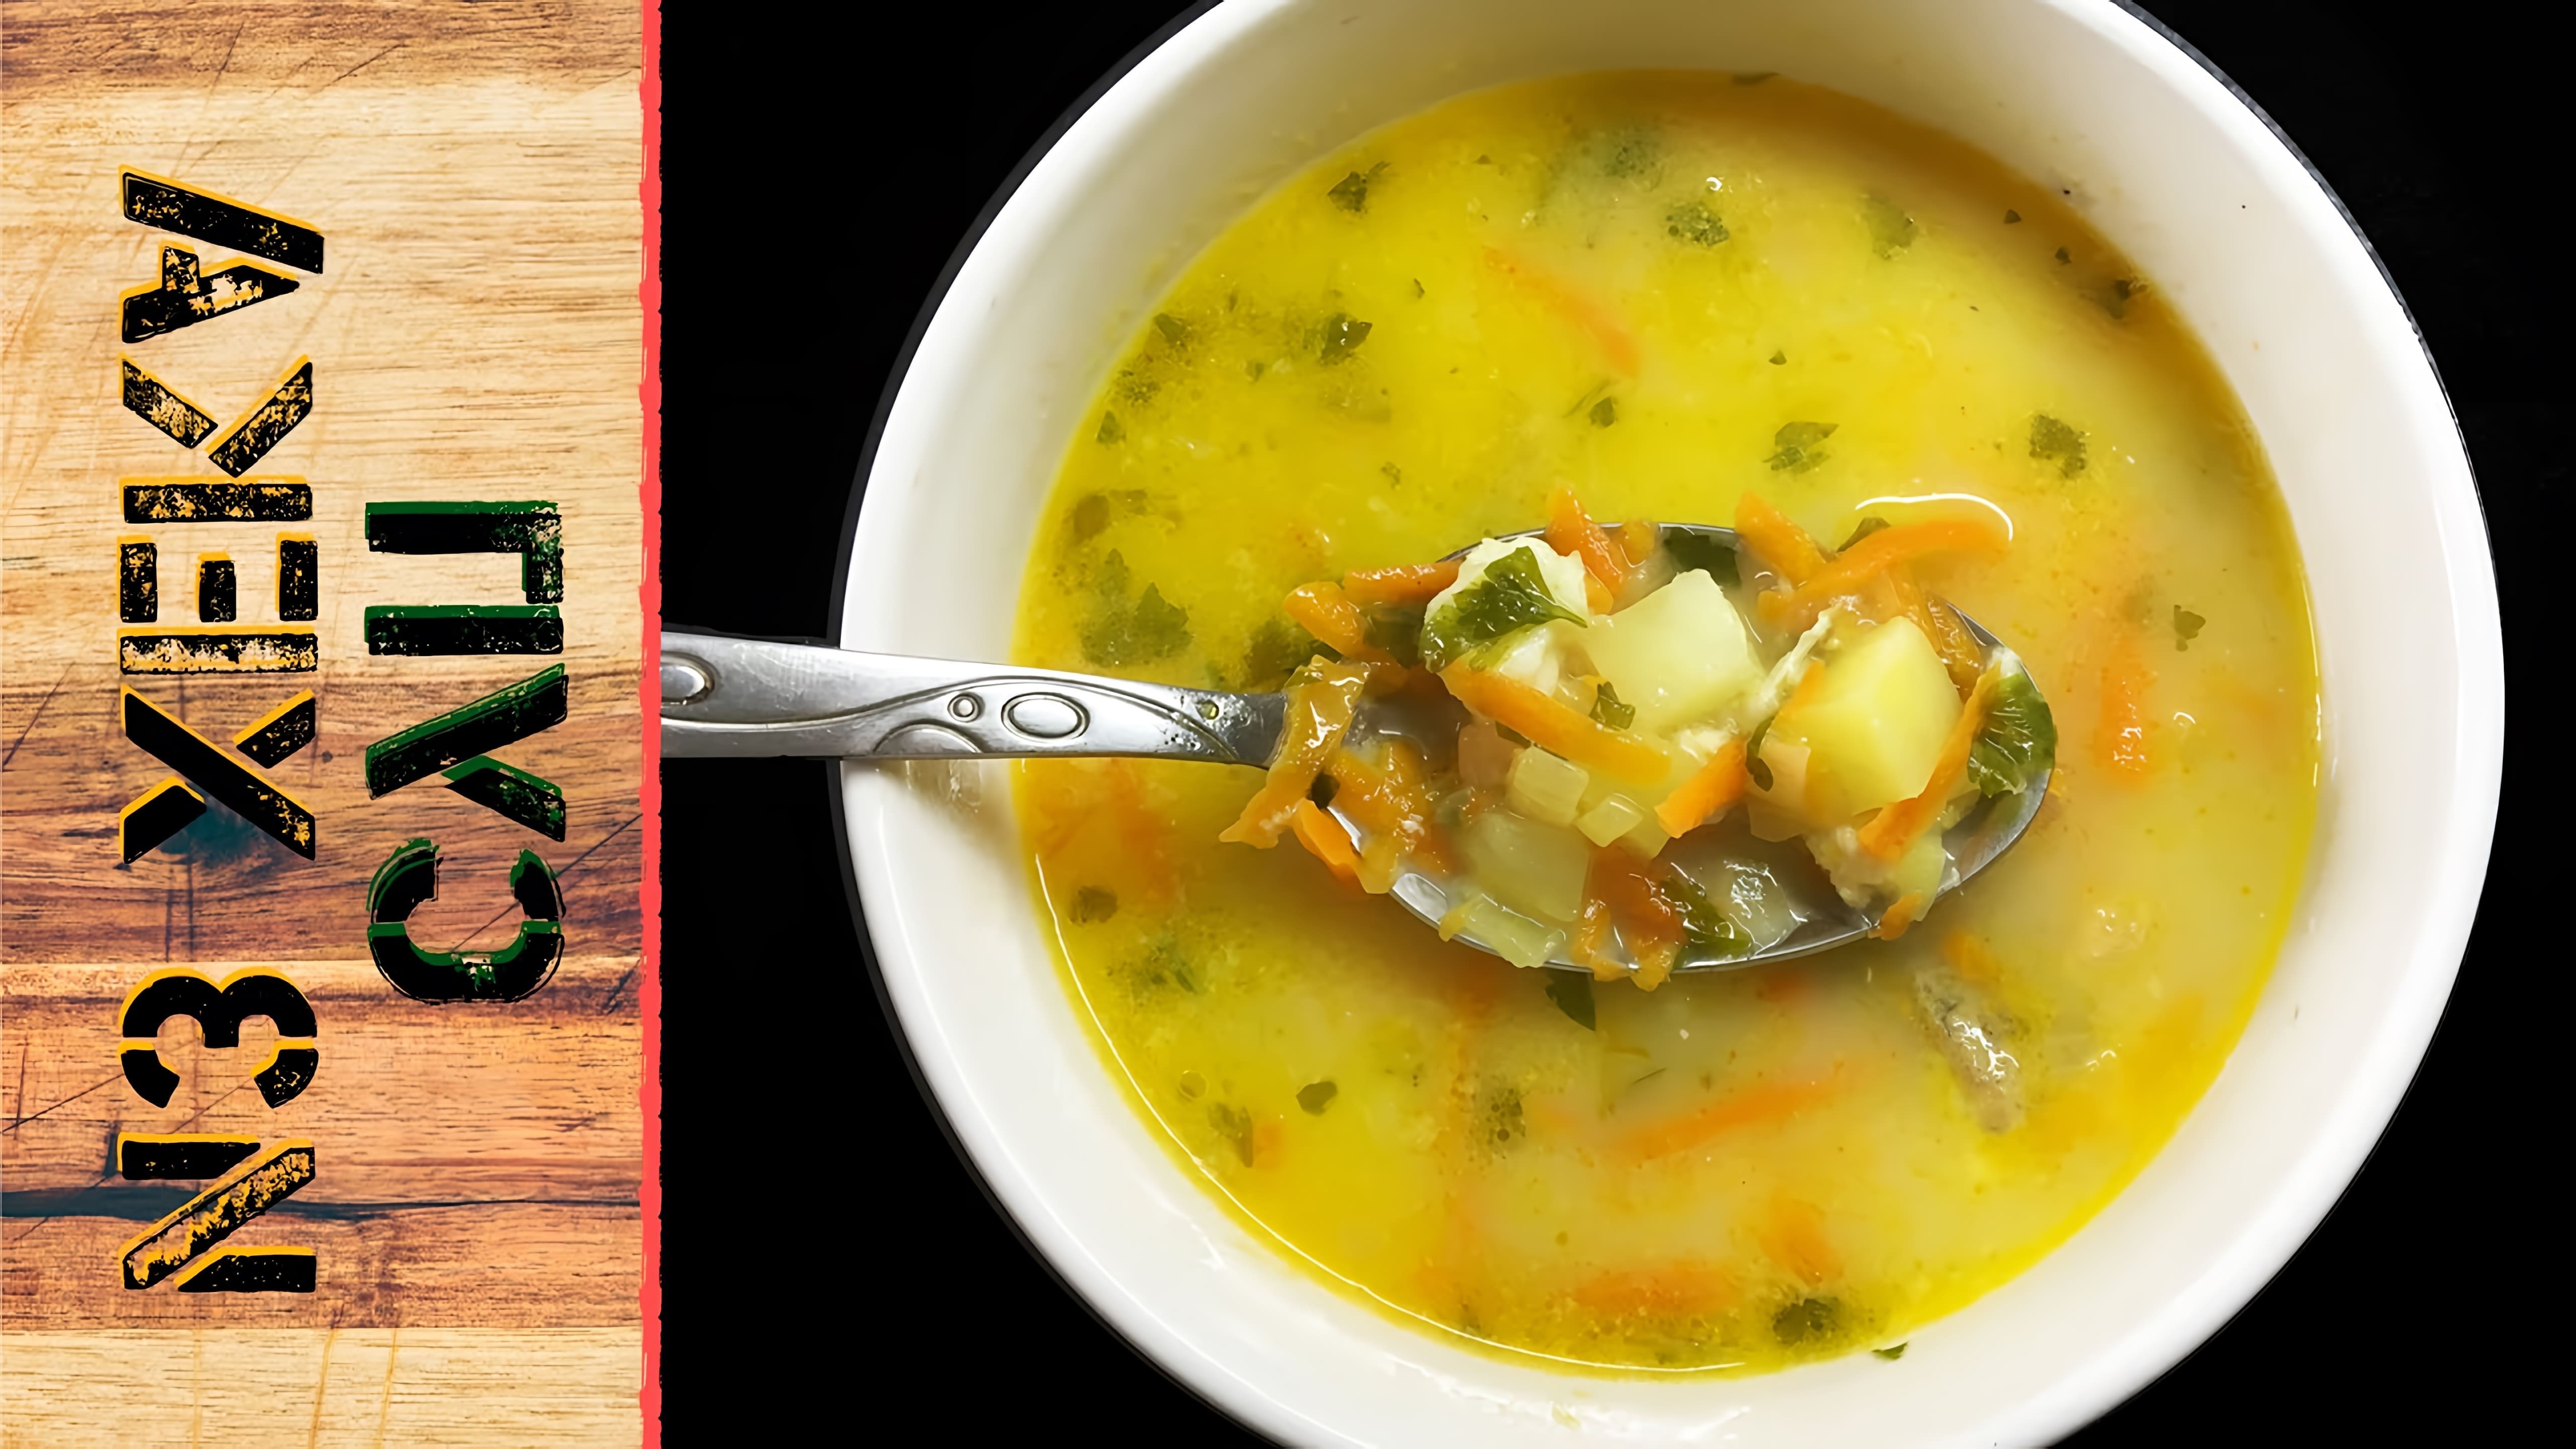 В этом видео демонстрируется рецепт приготовления супа из хека